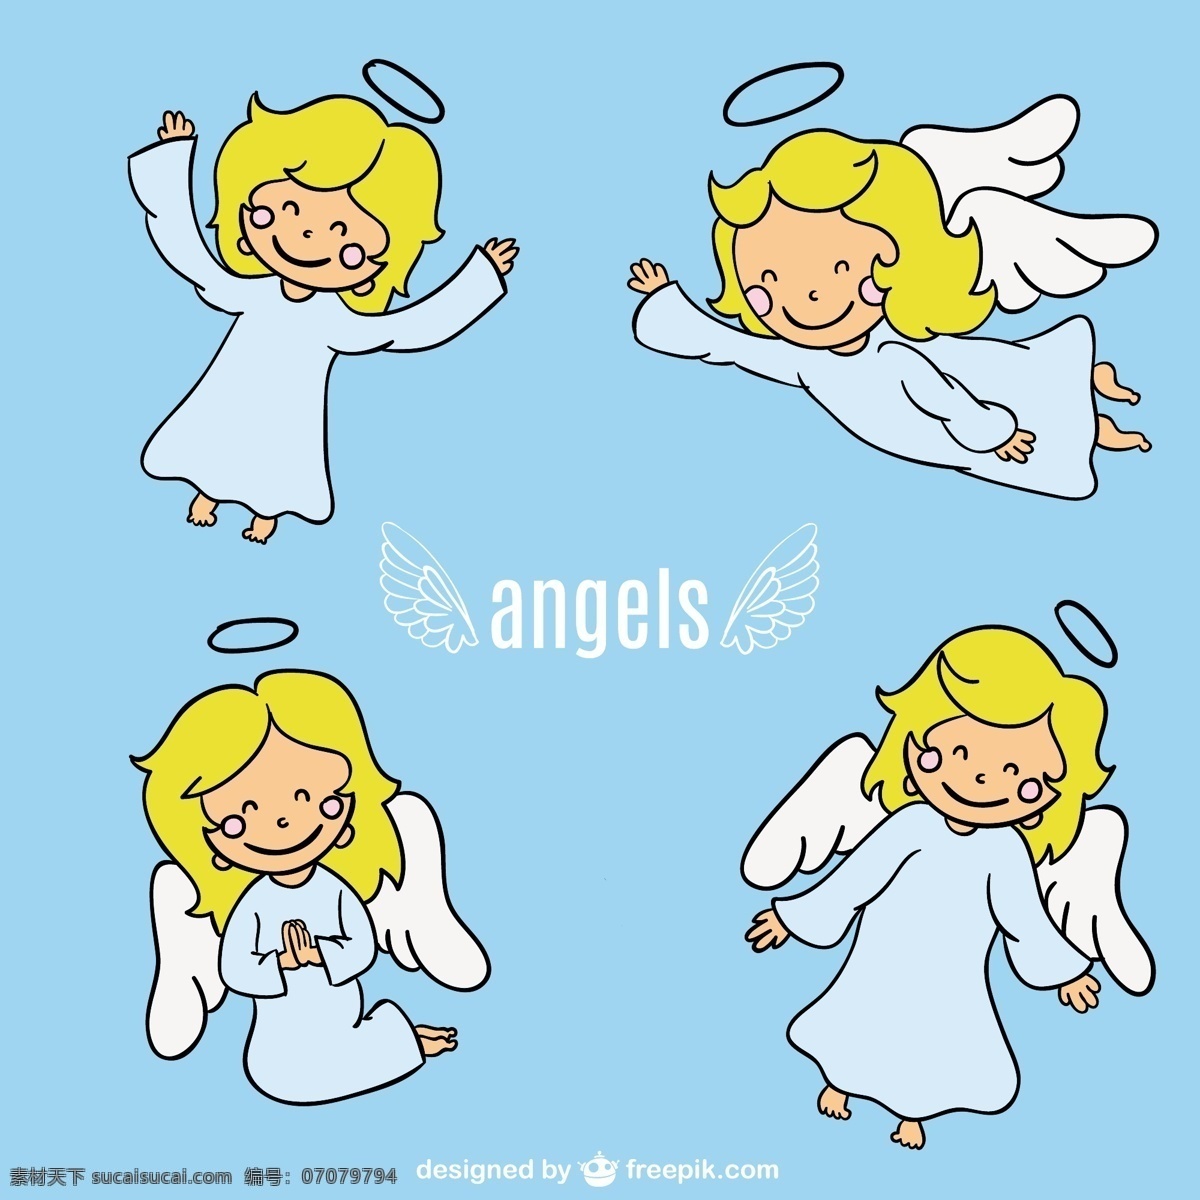 天使 卡通 人物 装饰 蓝色天使 性格可爱 图形 翅膀 涂鸦 平面设计 素描 绘画 翼 卡通人物 插画 符号 飞 青色 天蓝色